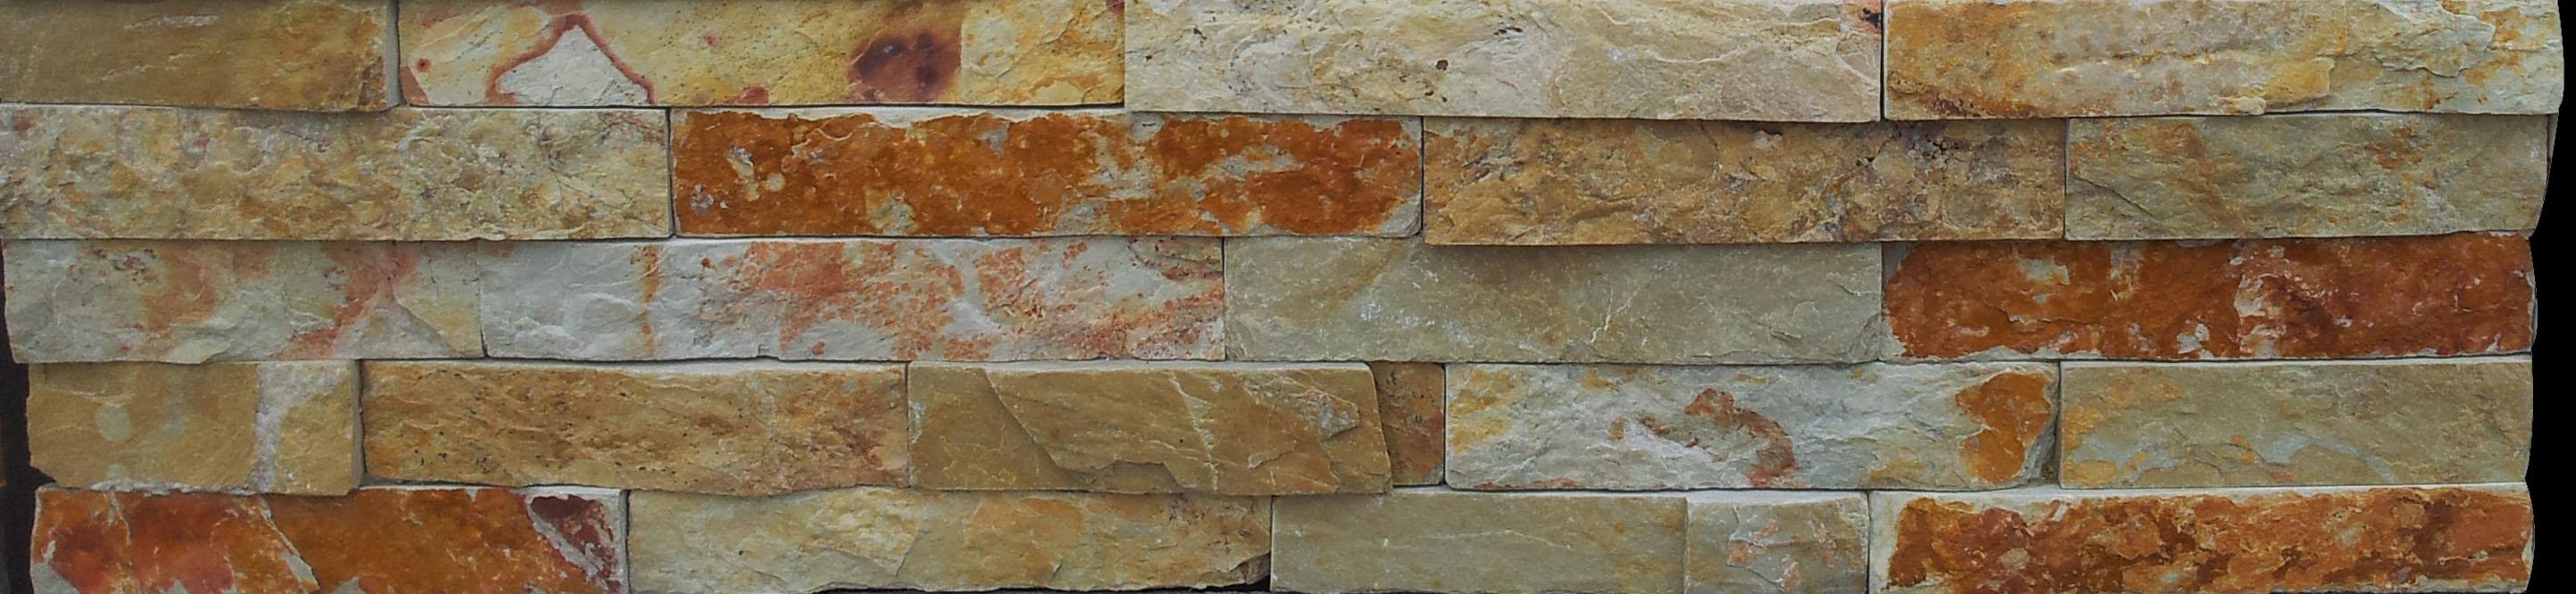 FSSW-265金锈石板岩文化石特色新品